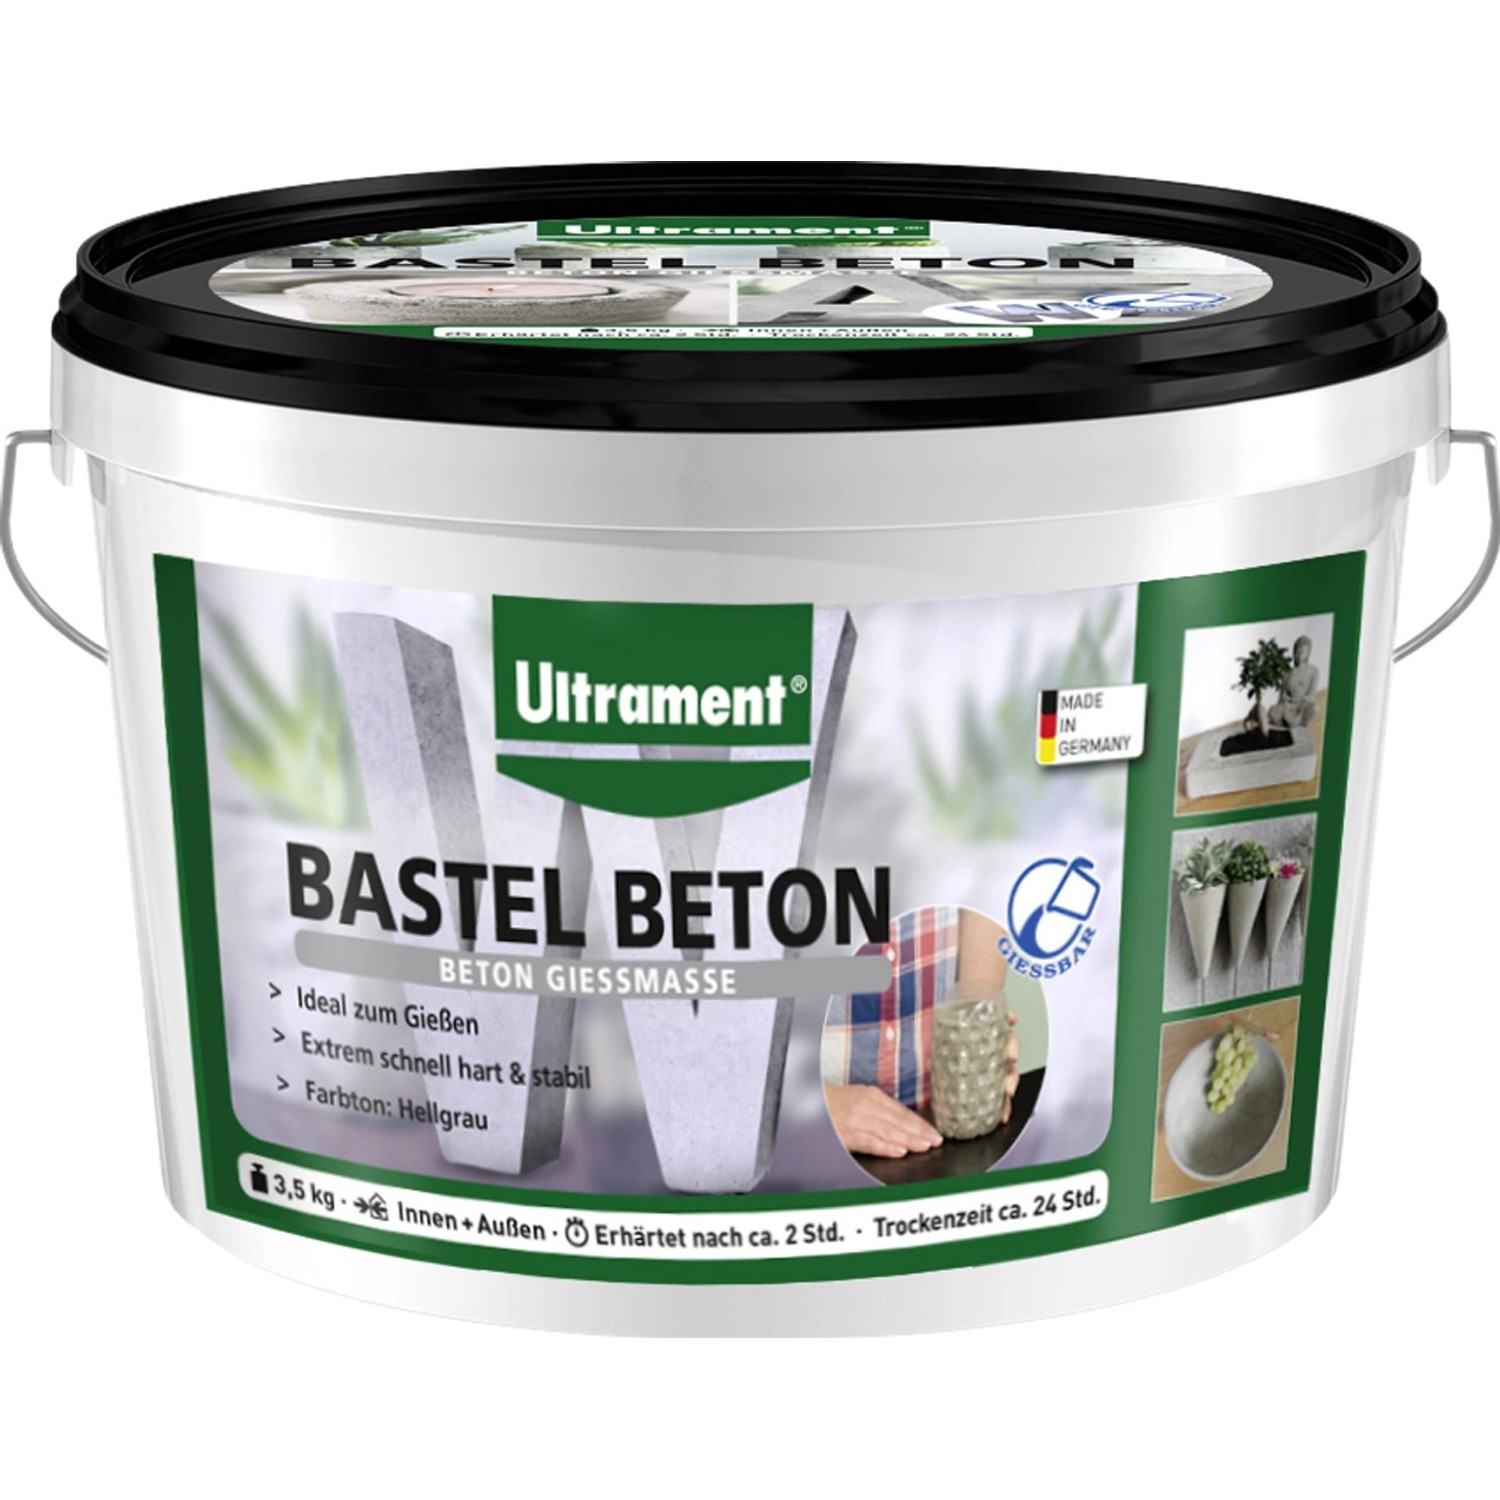 Ultrament Bastel Beton 3,5 kg von Ultrament